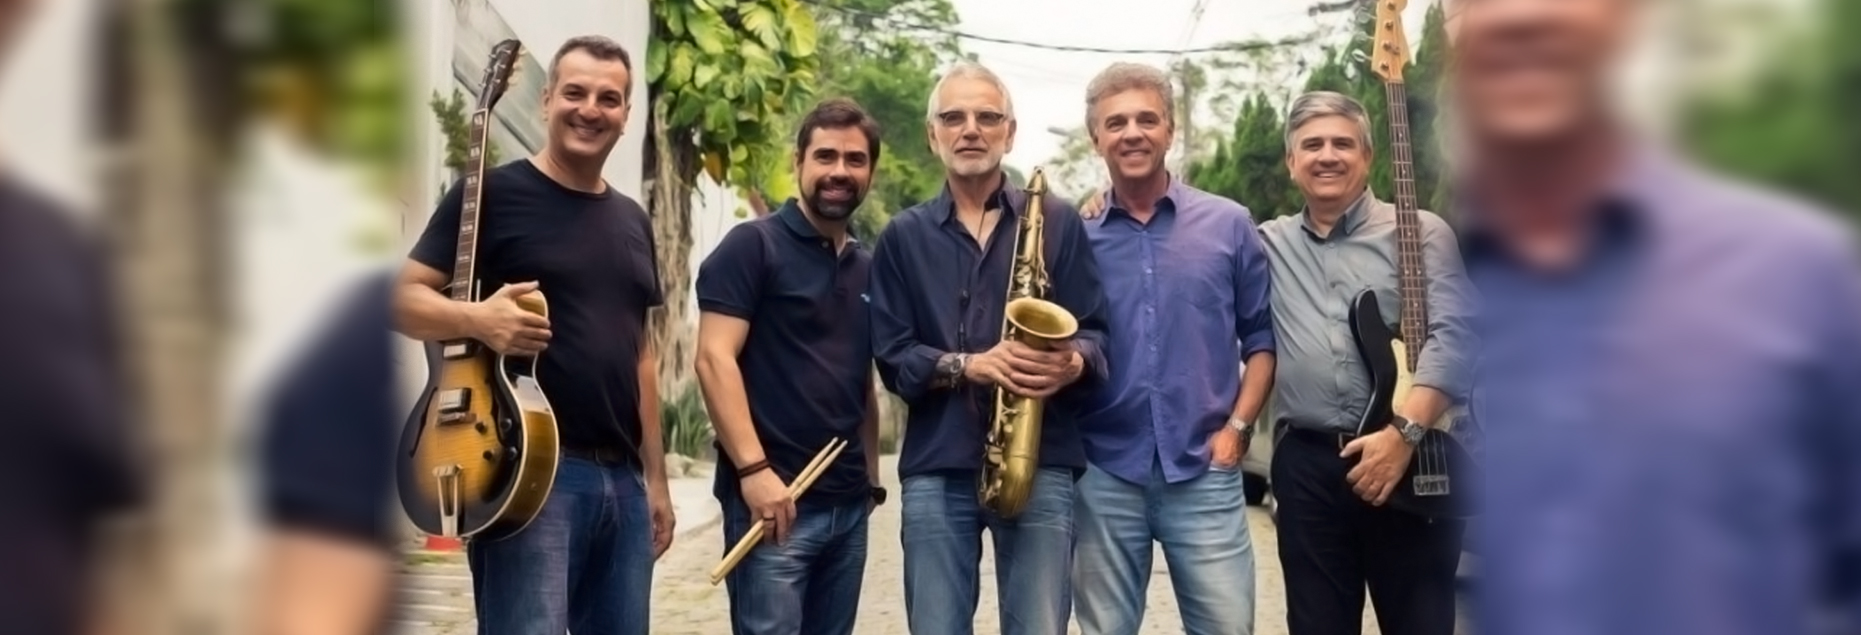 All That Jazz - Raul Mascarenhas e Conexão Rio